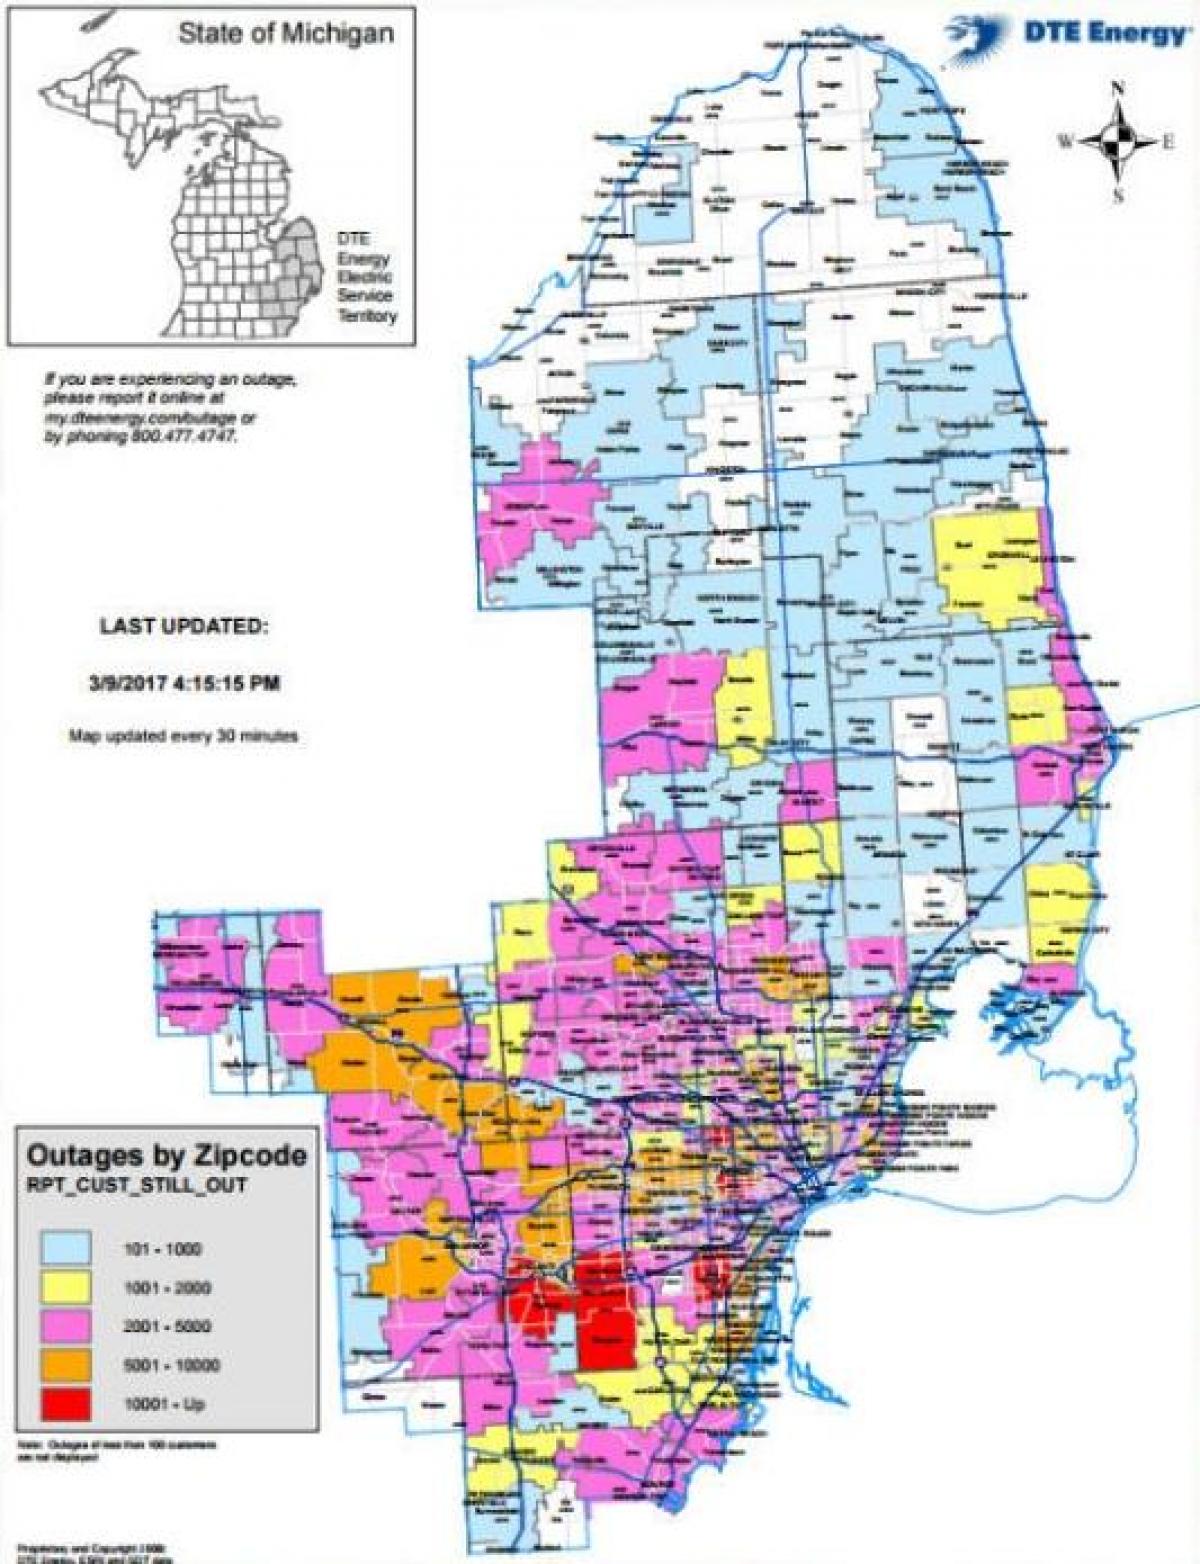 Detroit edison ndërprerje të energjisë hartë